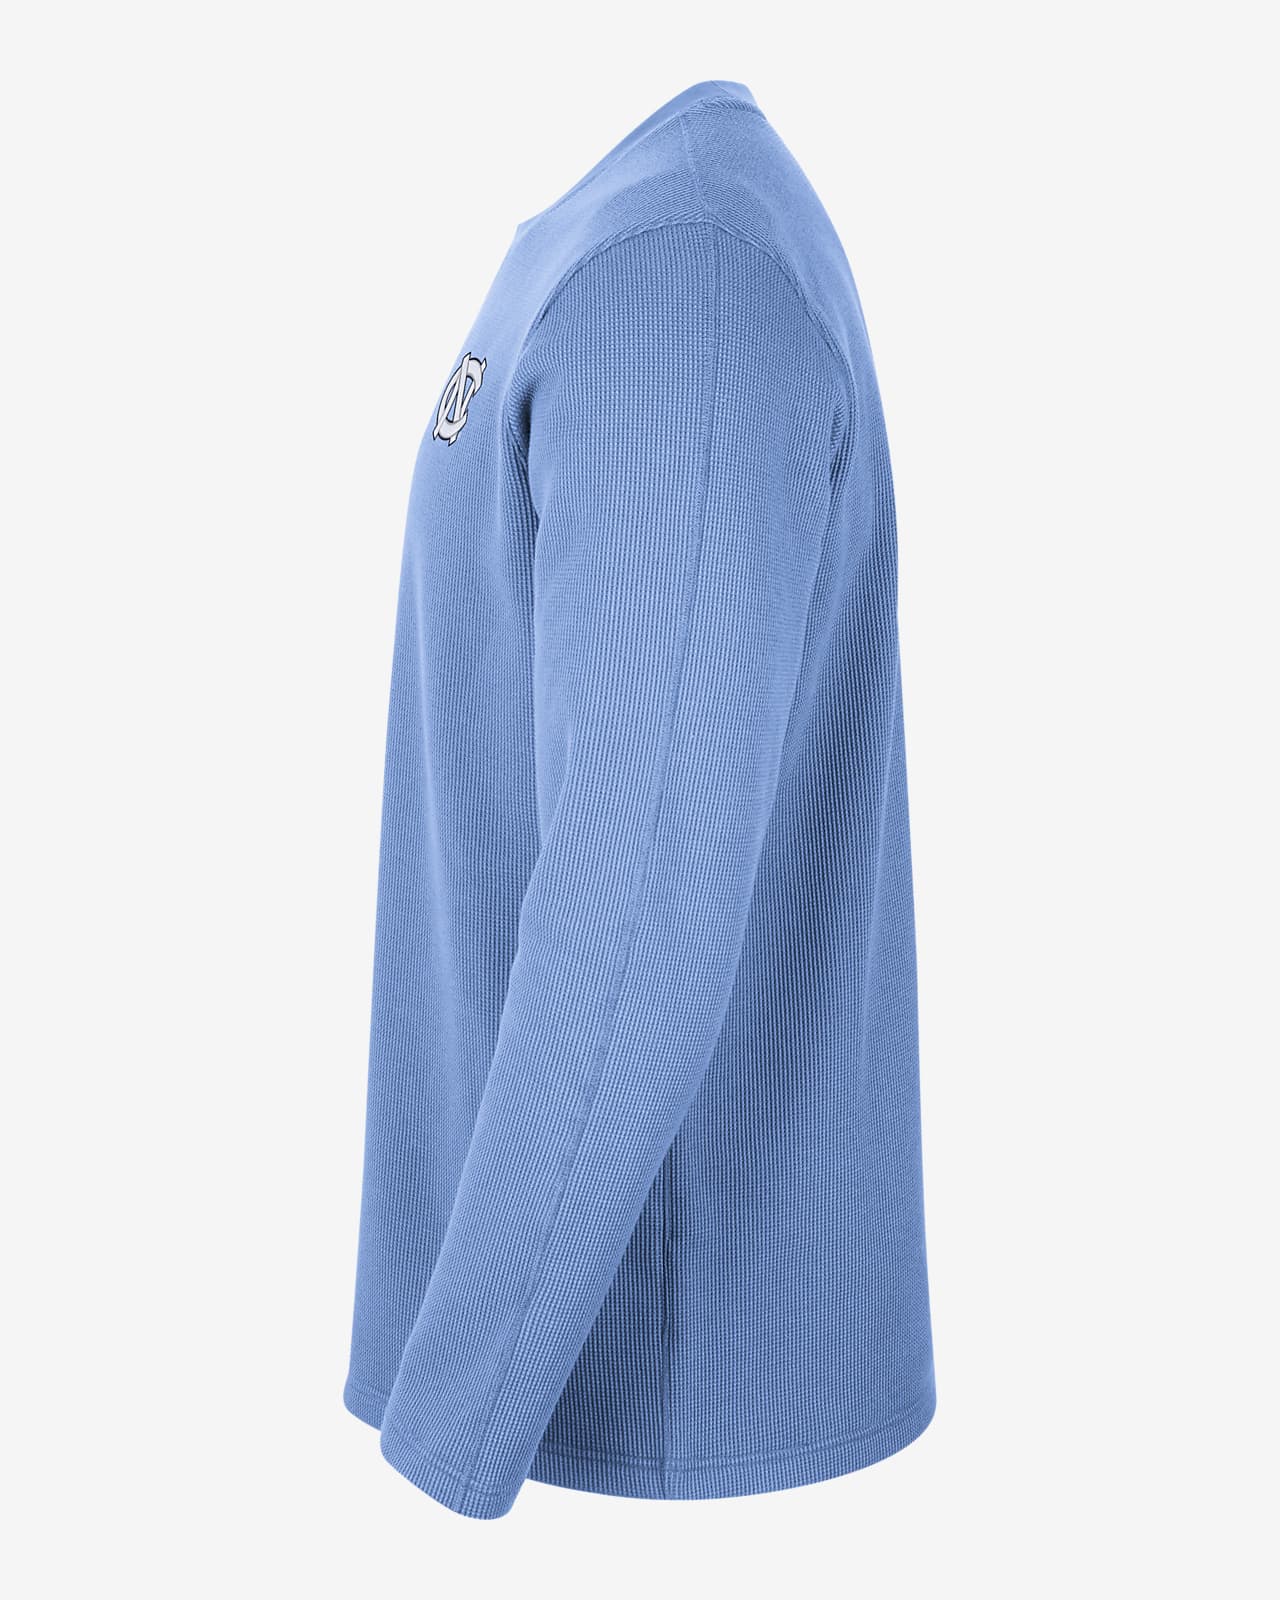 Men's Light Blue Blazer, Light Blue Long Sleeve Shirt, White